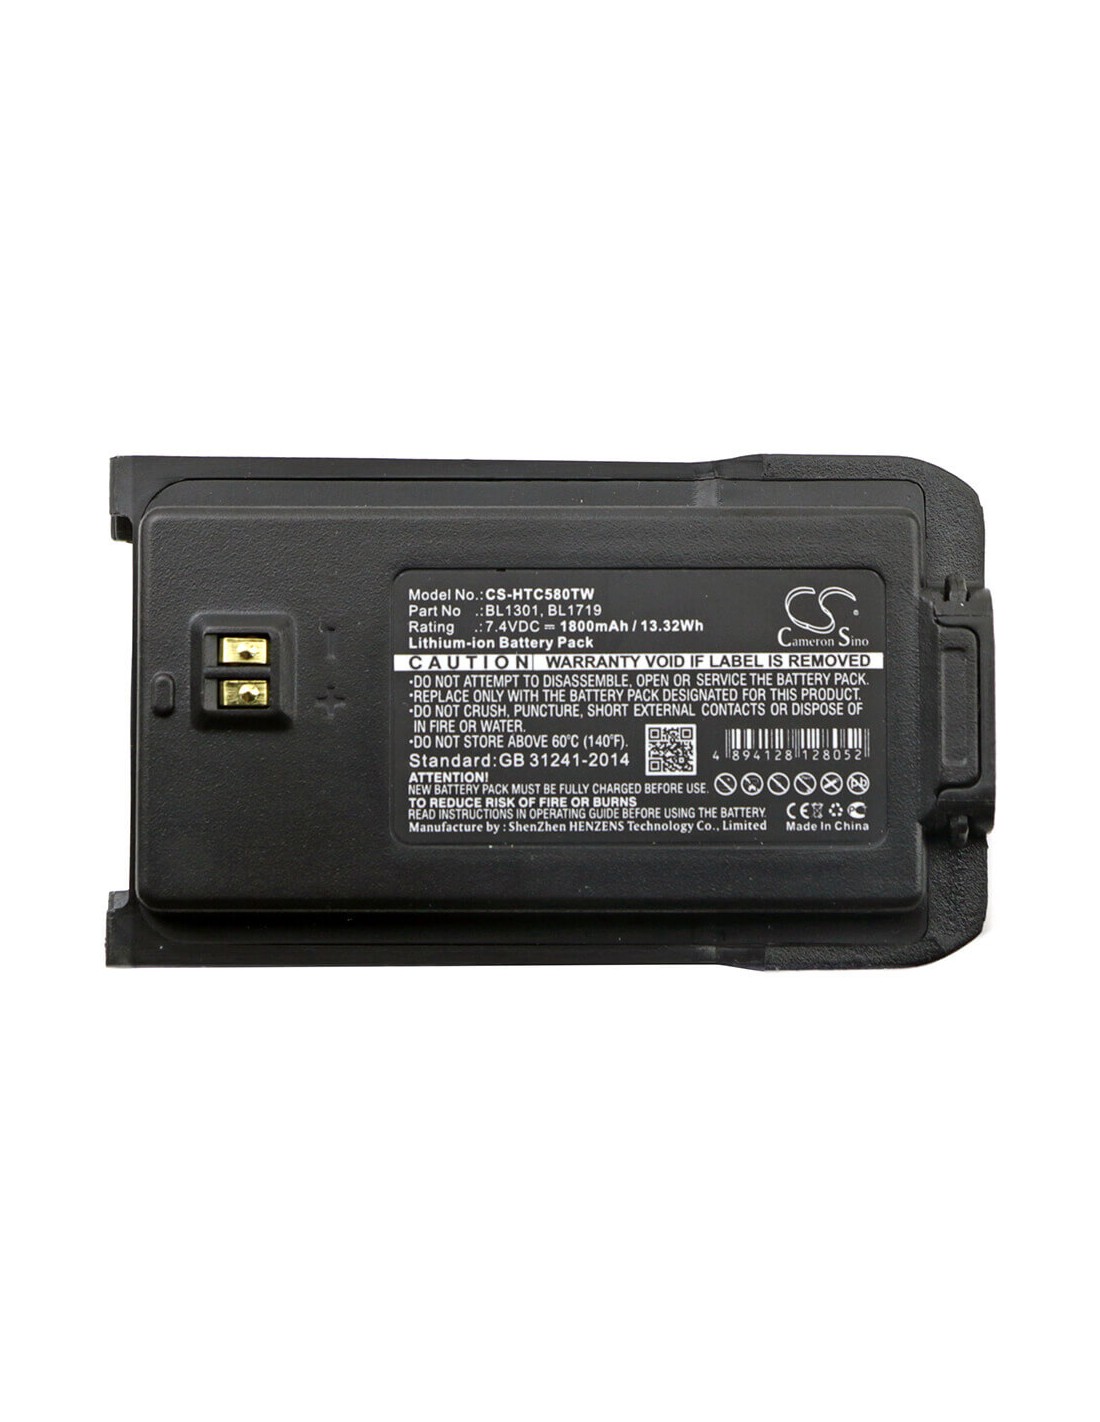 Battery for Htc Tc-446s, Tc-518, Tc-580 7.4V, 1800mAh - 13.32Wh